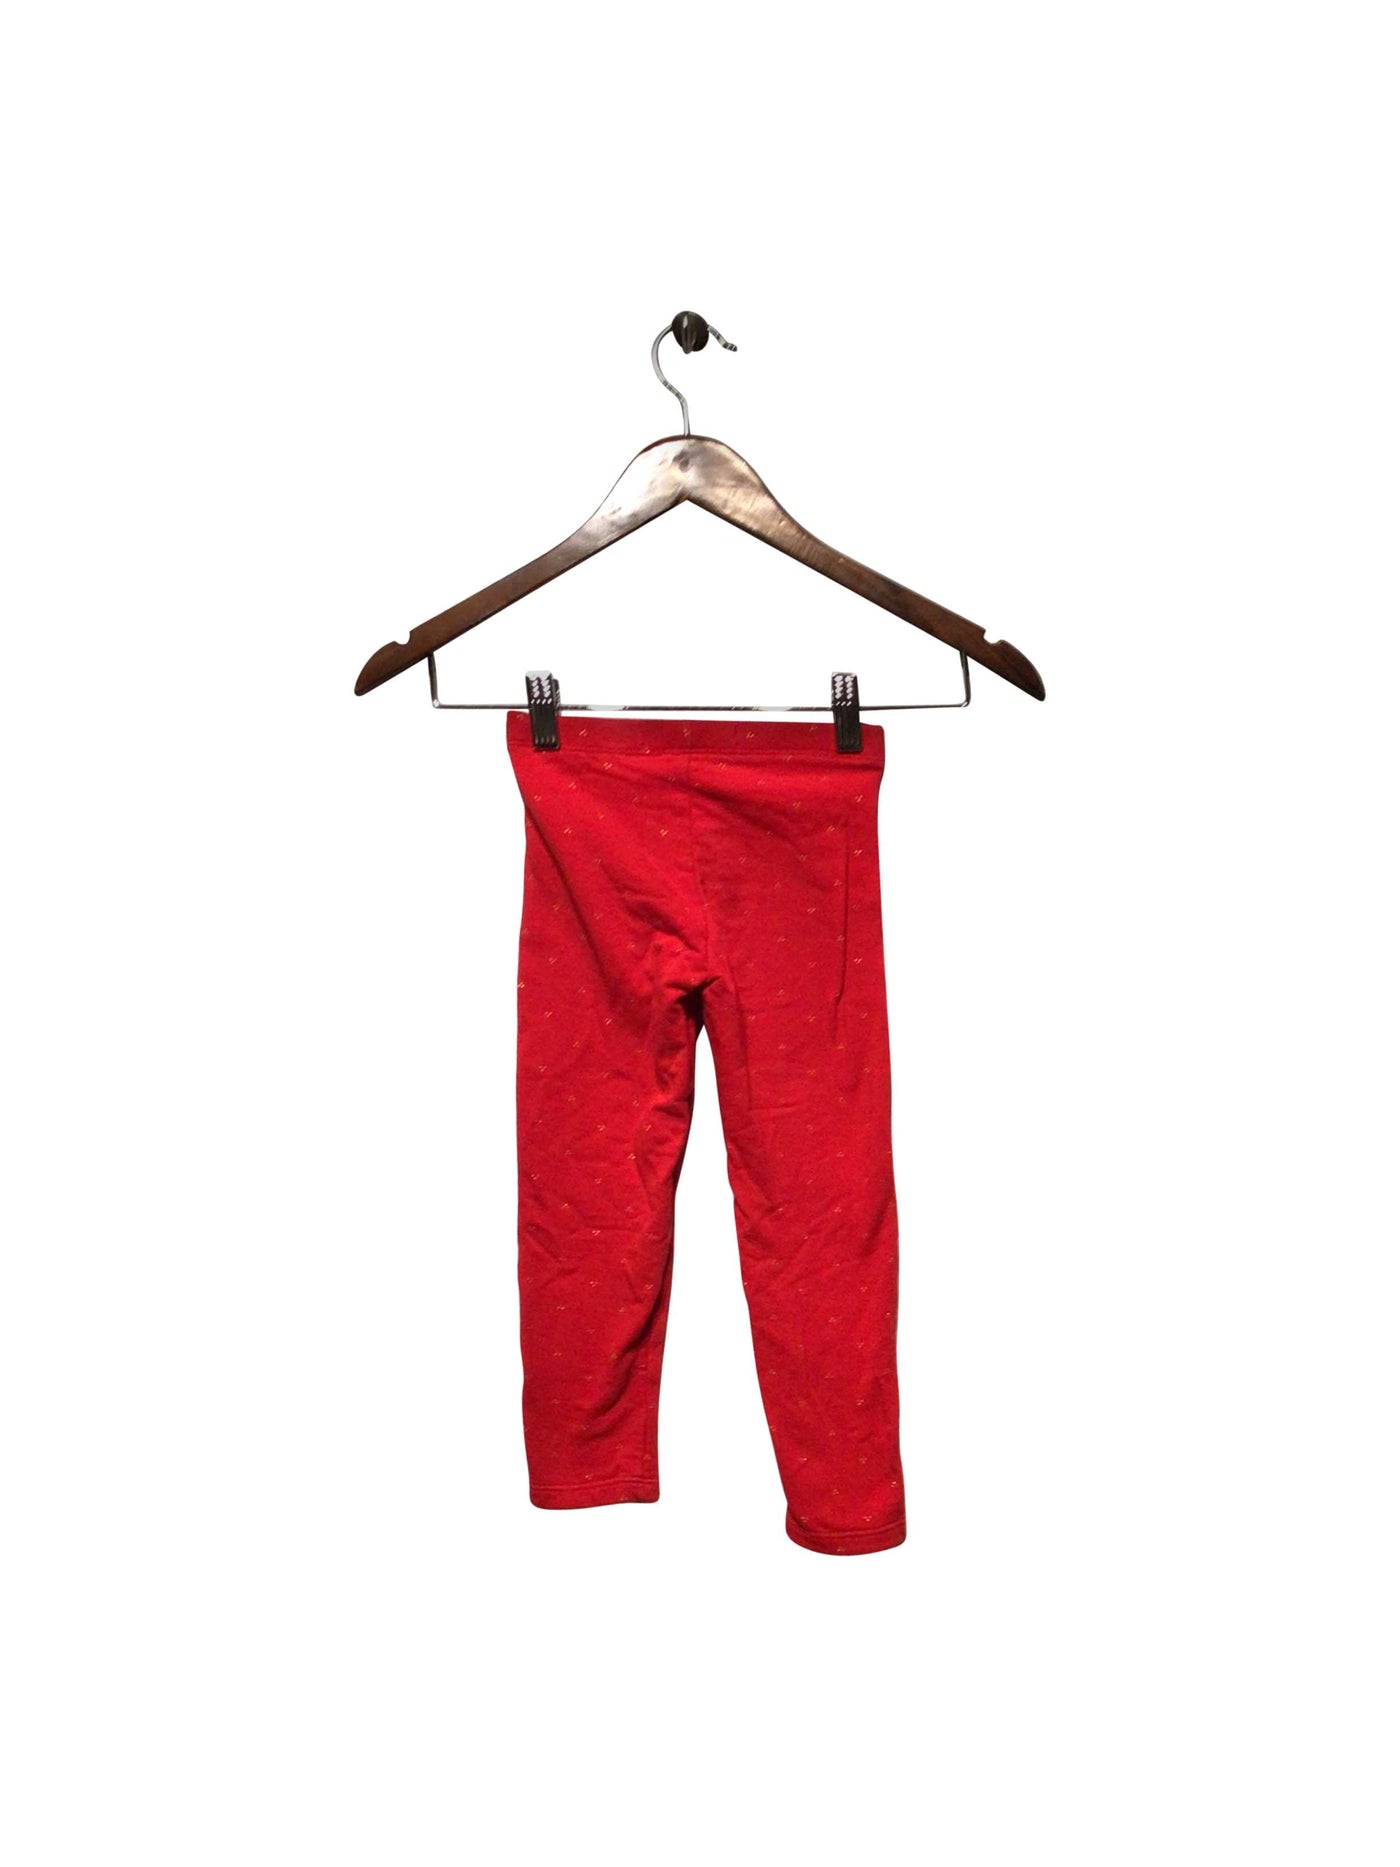 OK AIDI Regular fit Pant in Red  -  7  5.00 Koop